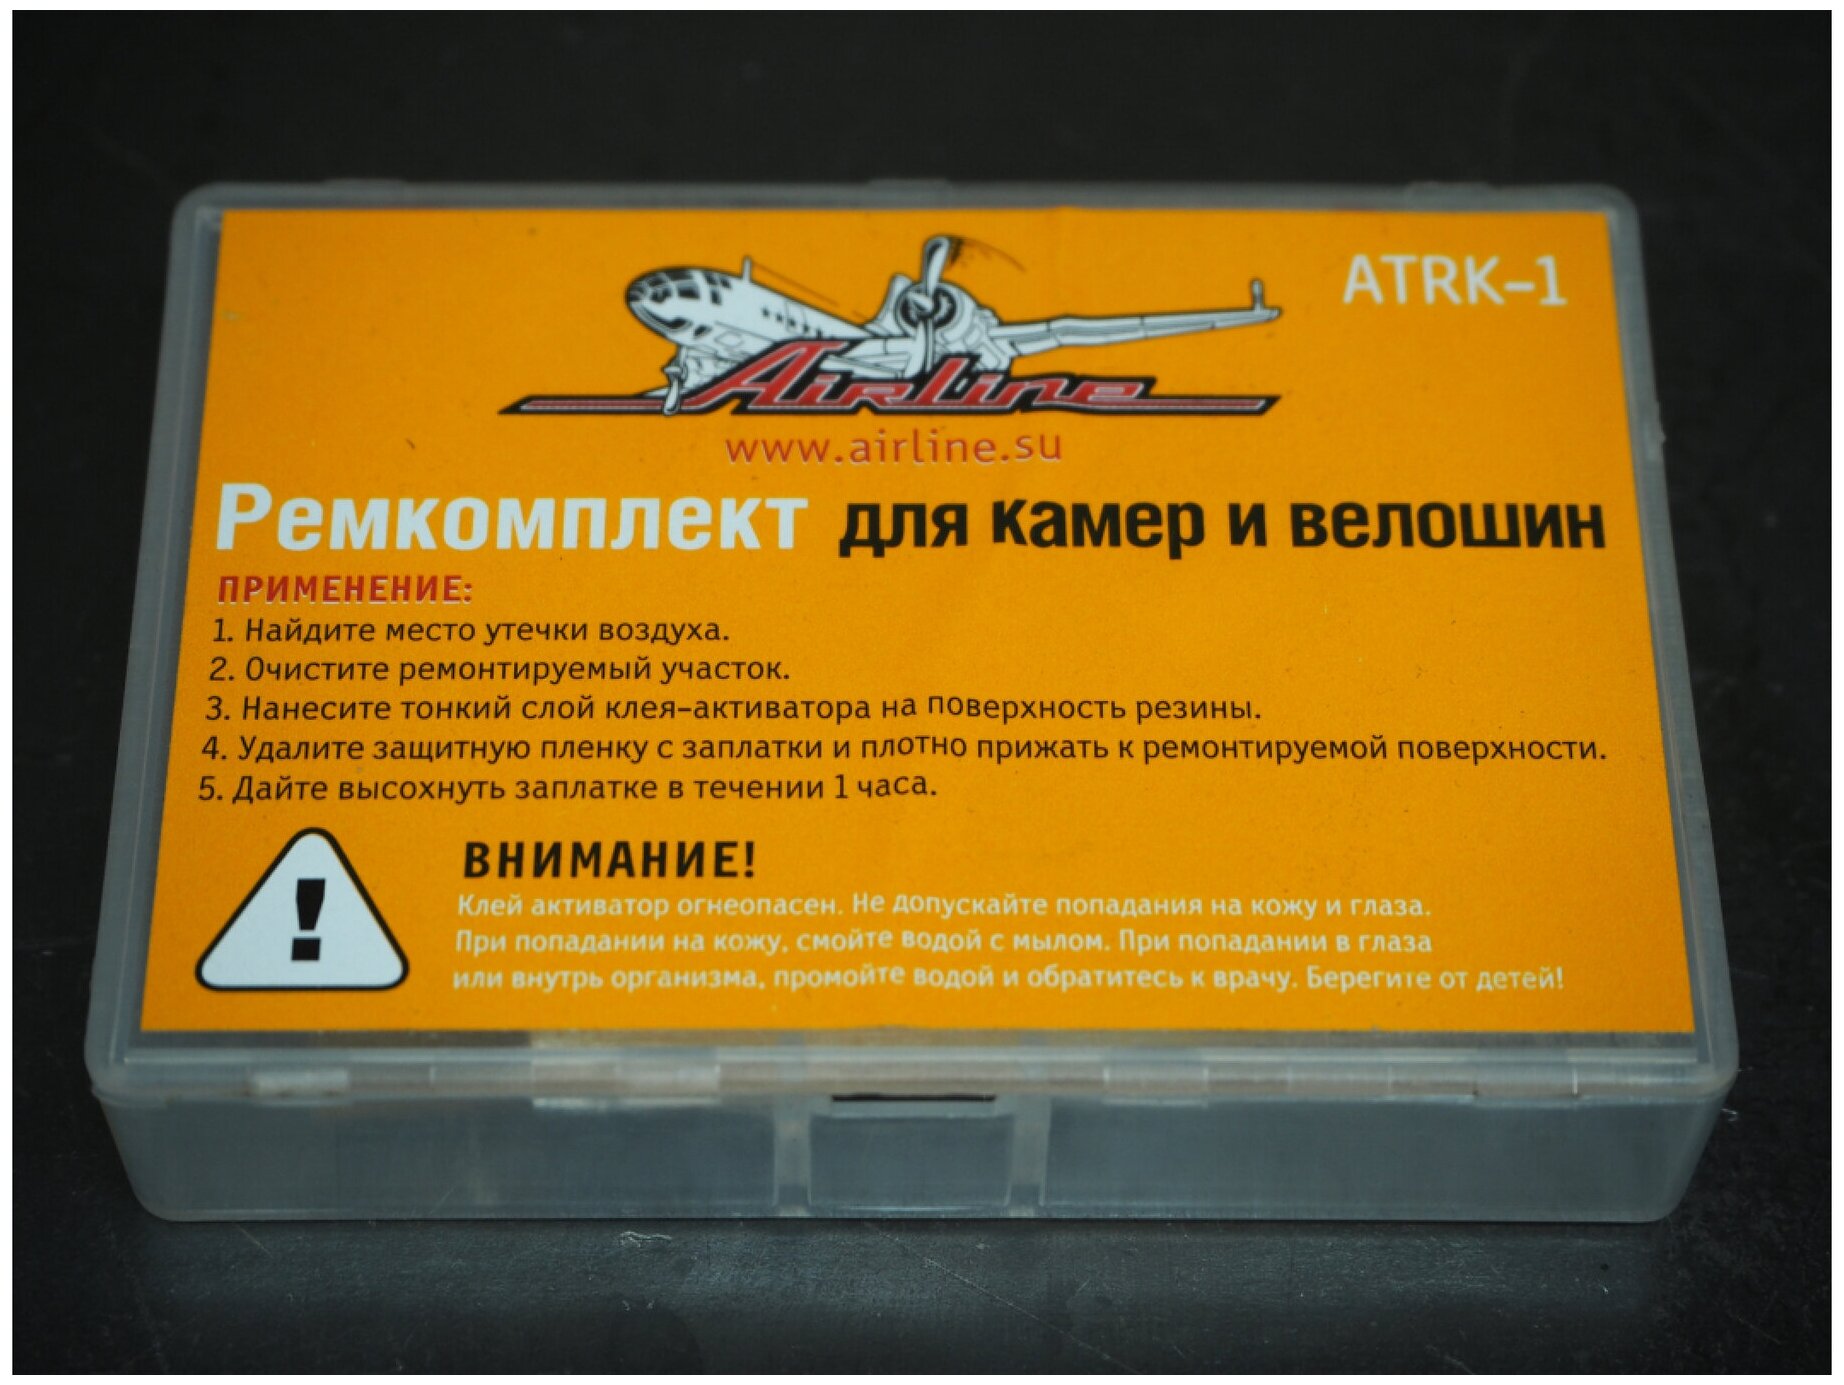 Ремкомплект для ремонта камер и вело шин в кейсе (atrk-1)